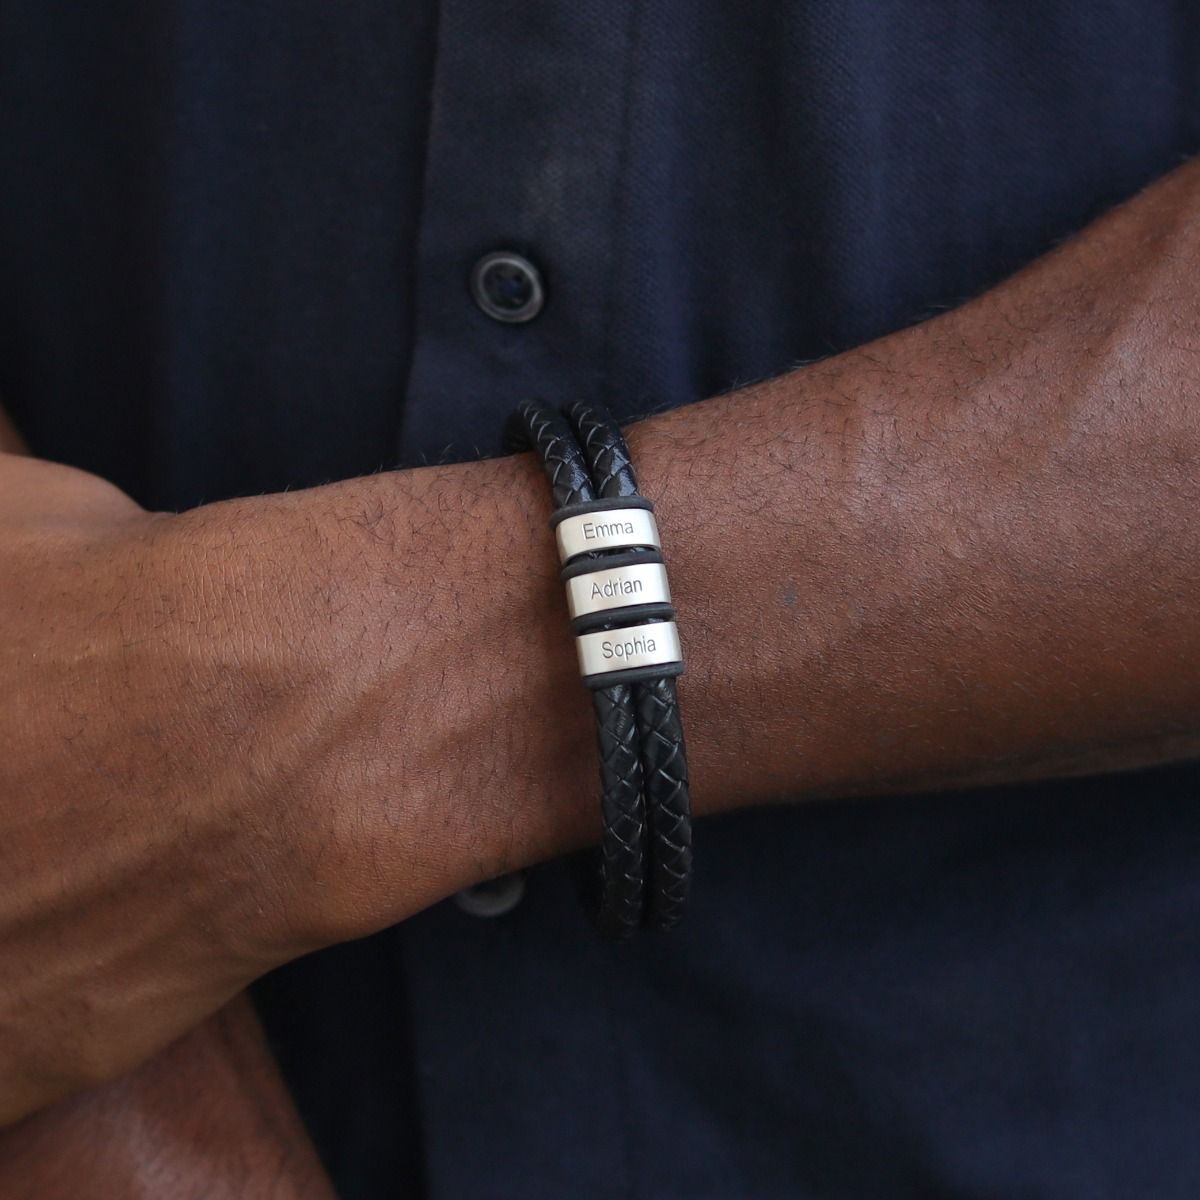 leather bracelet braided - Ibiza classic black